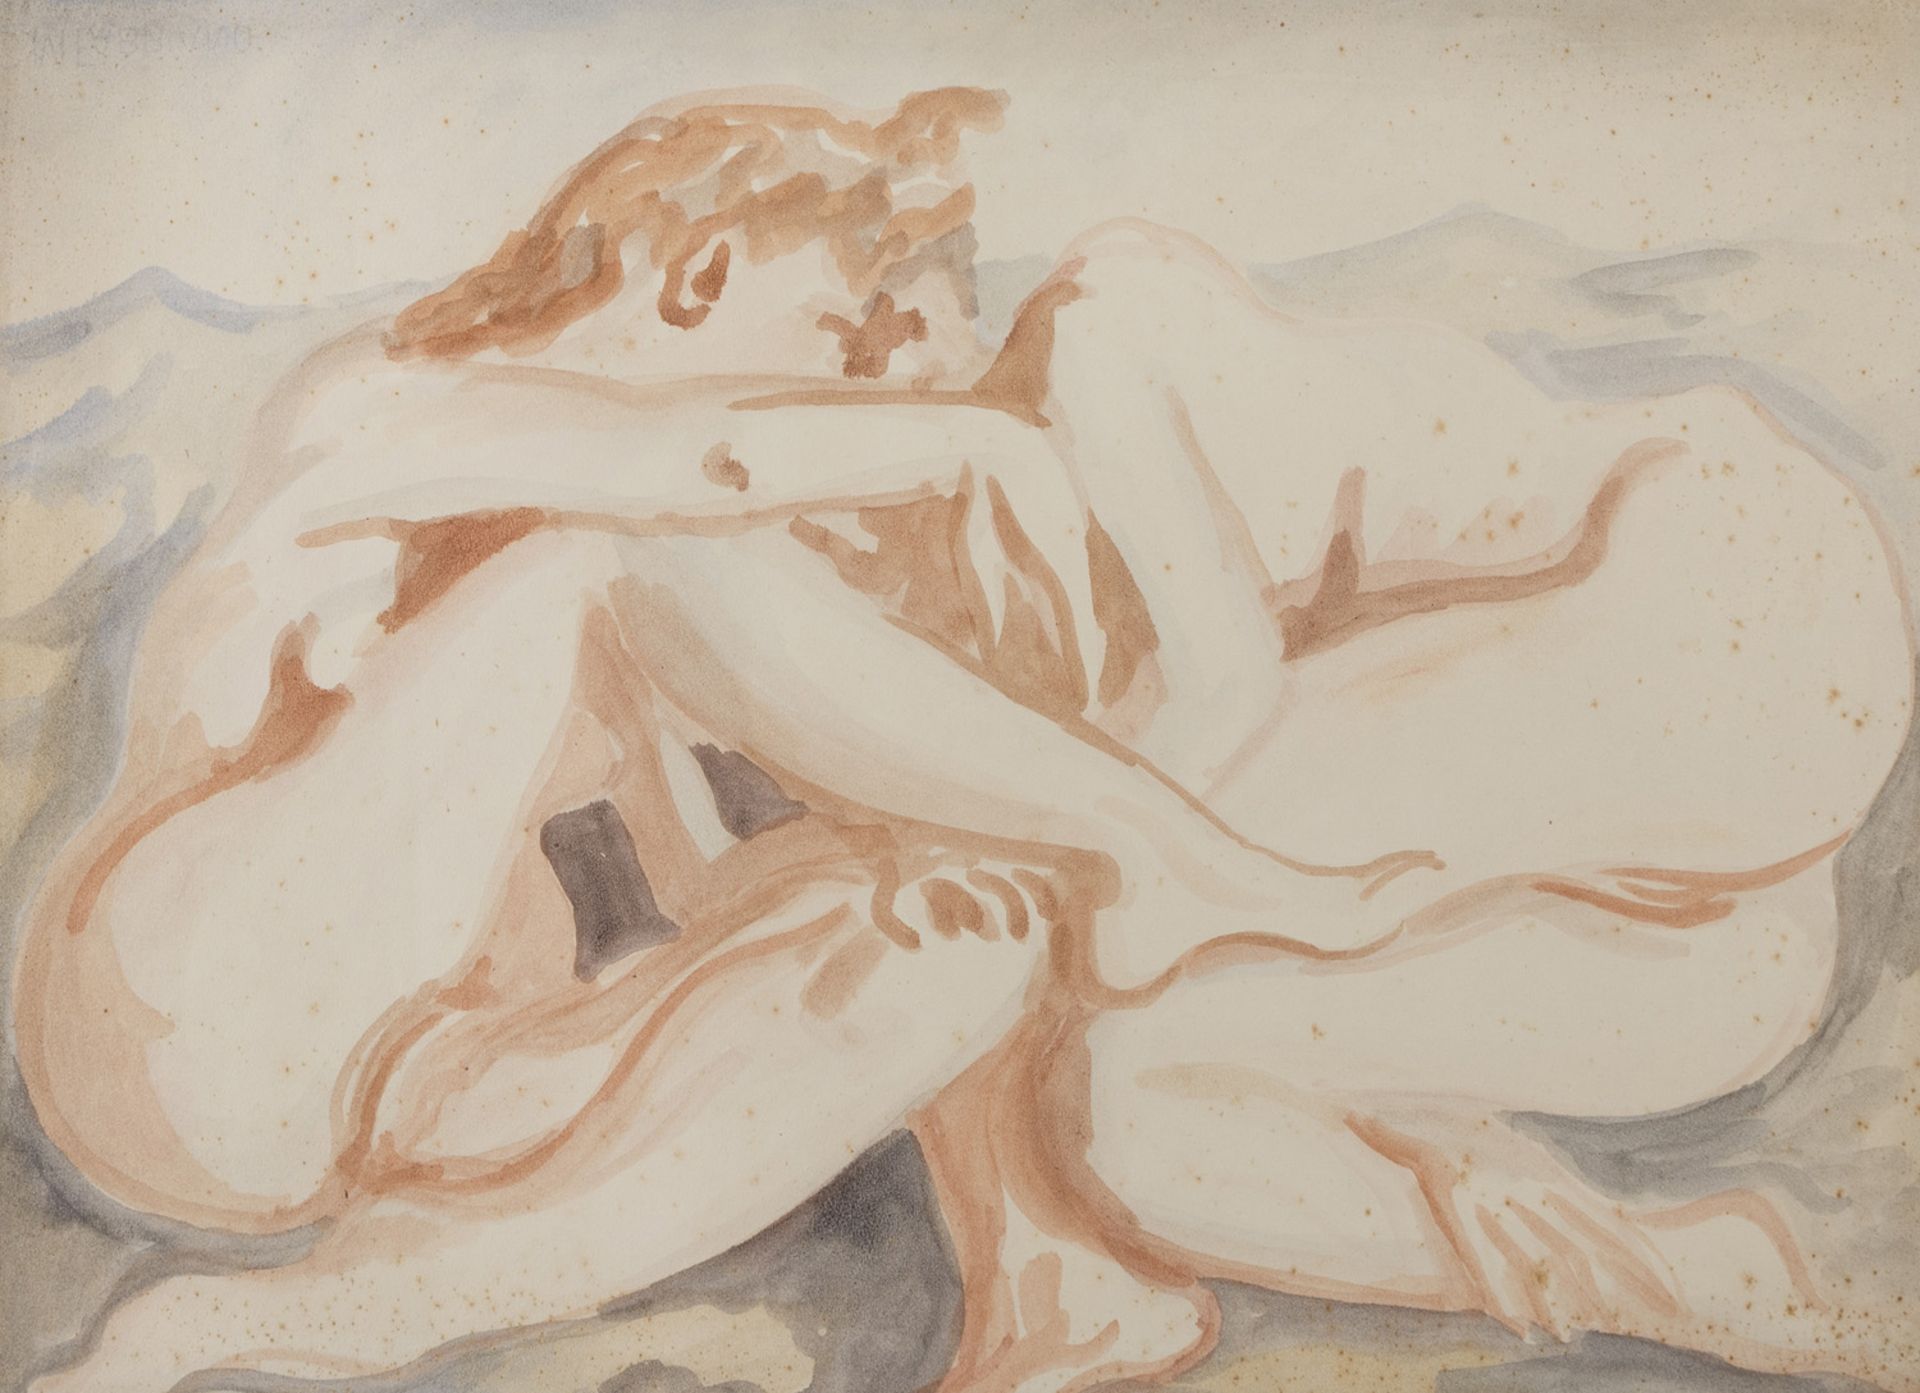 CARLO LEVI (Torino 1902 - Roma 1975) Nudi femminili, 1938 ca. Acquerello su carta, cm. 47,5 x 66,5